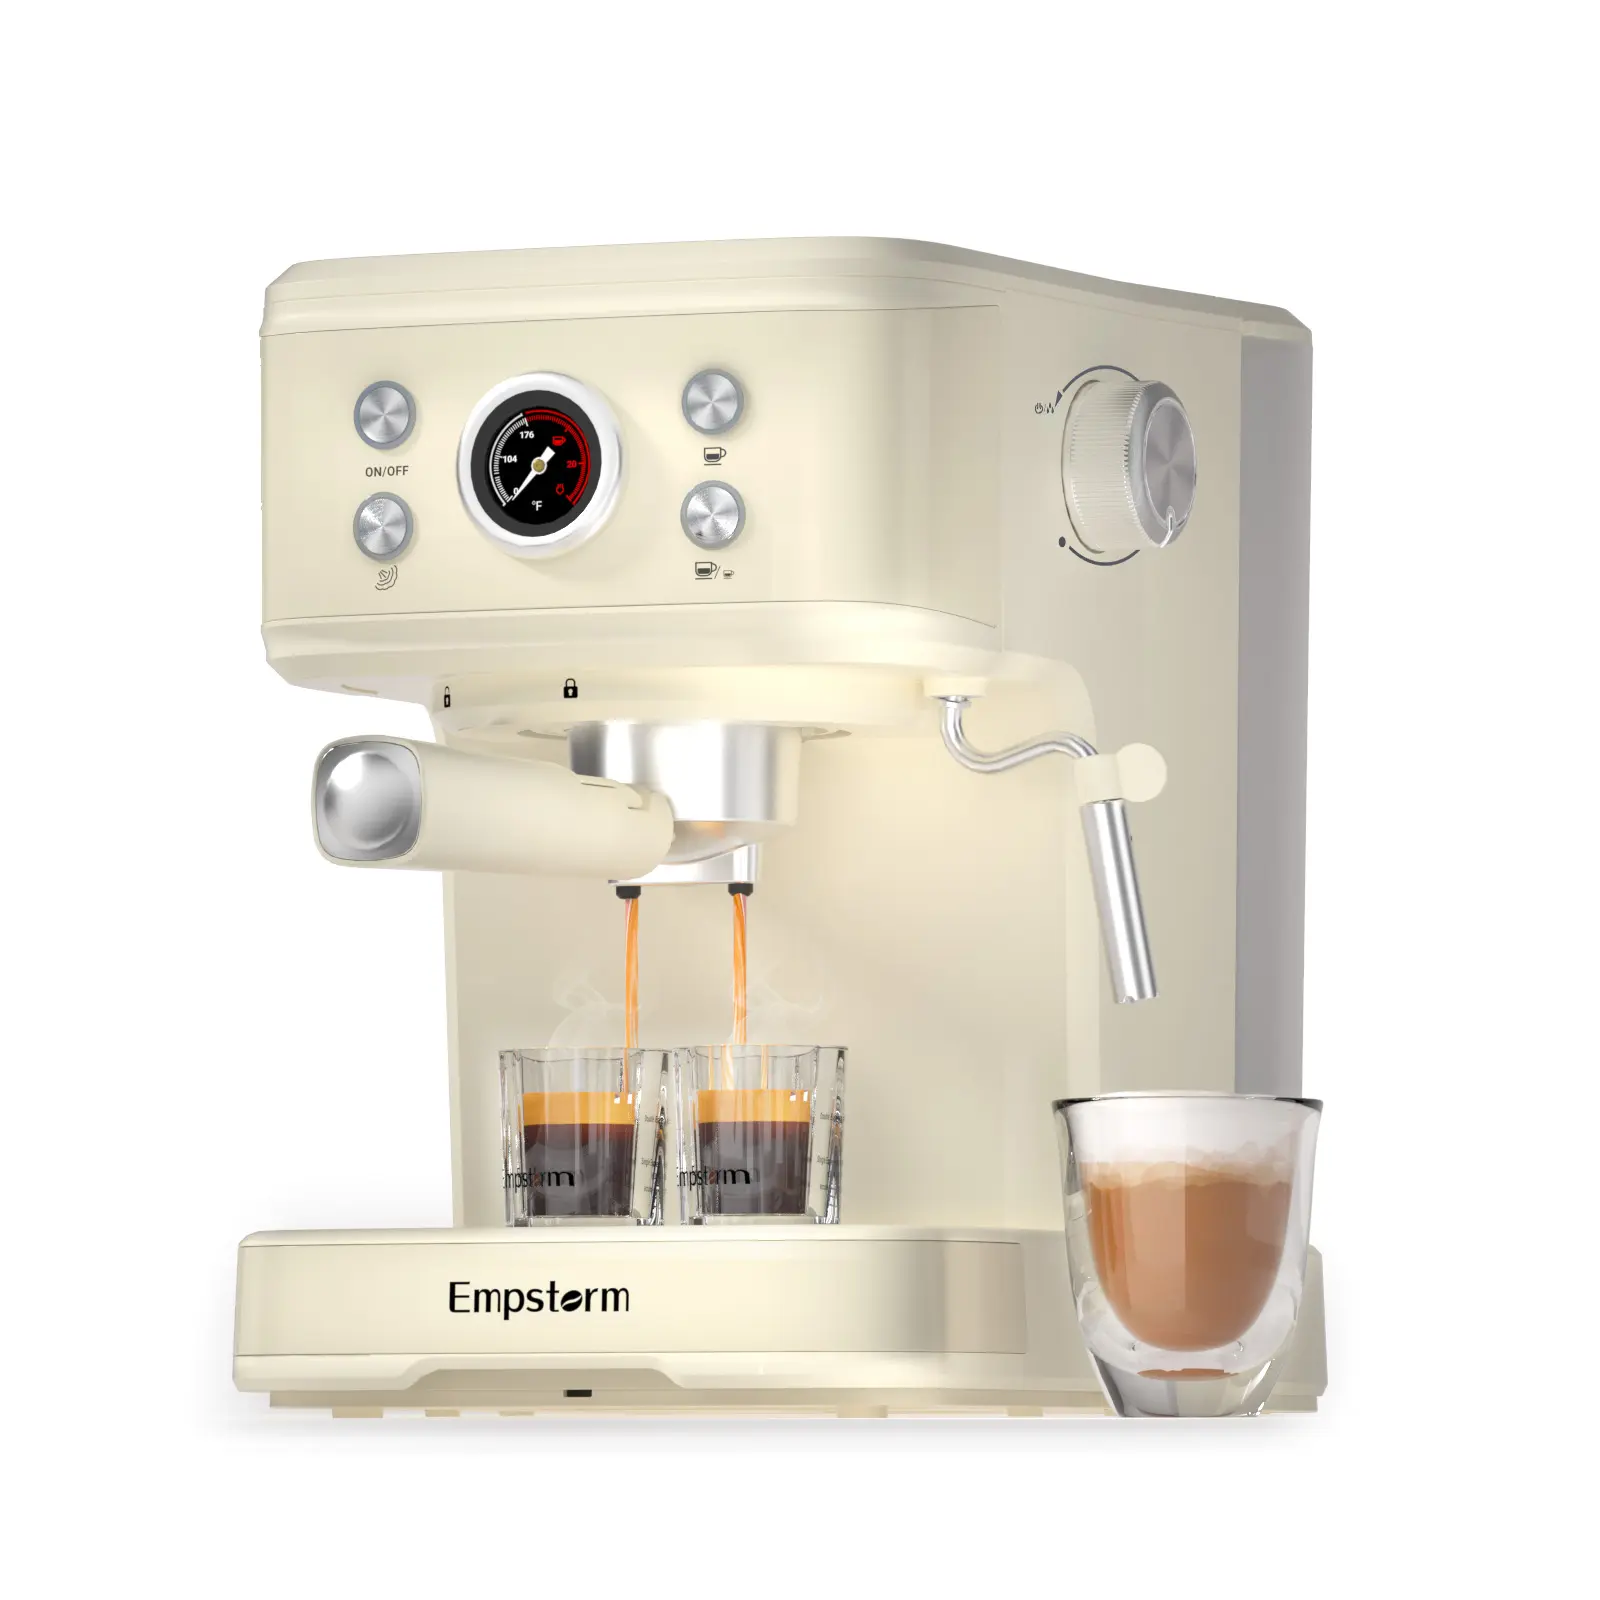 Empstorm orijinal tasarım verimli cihaz 120v220v elektrikli yarı otomatik demlemek espresso kahve makineleri iş kullanımı için